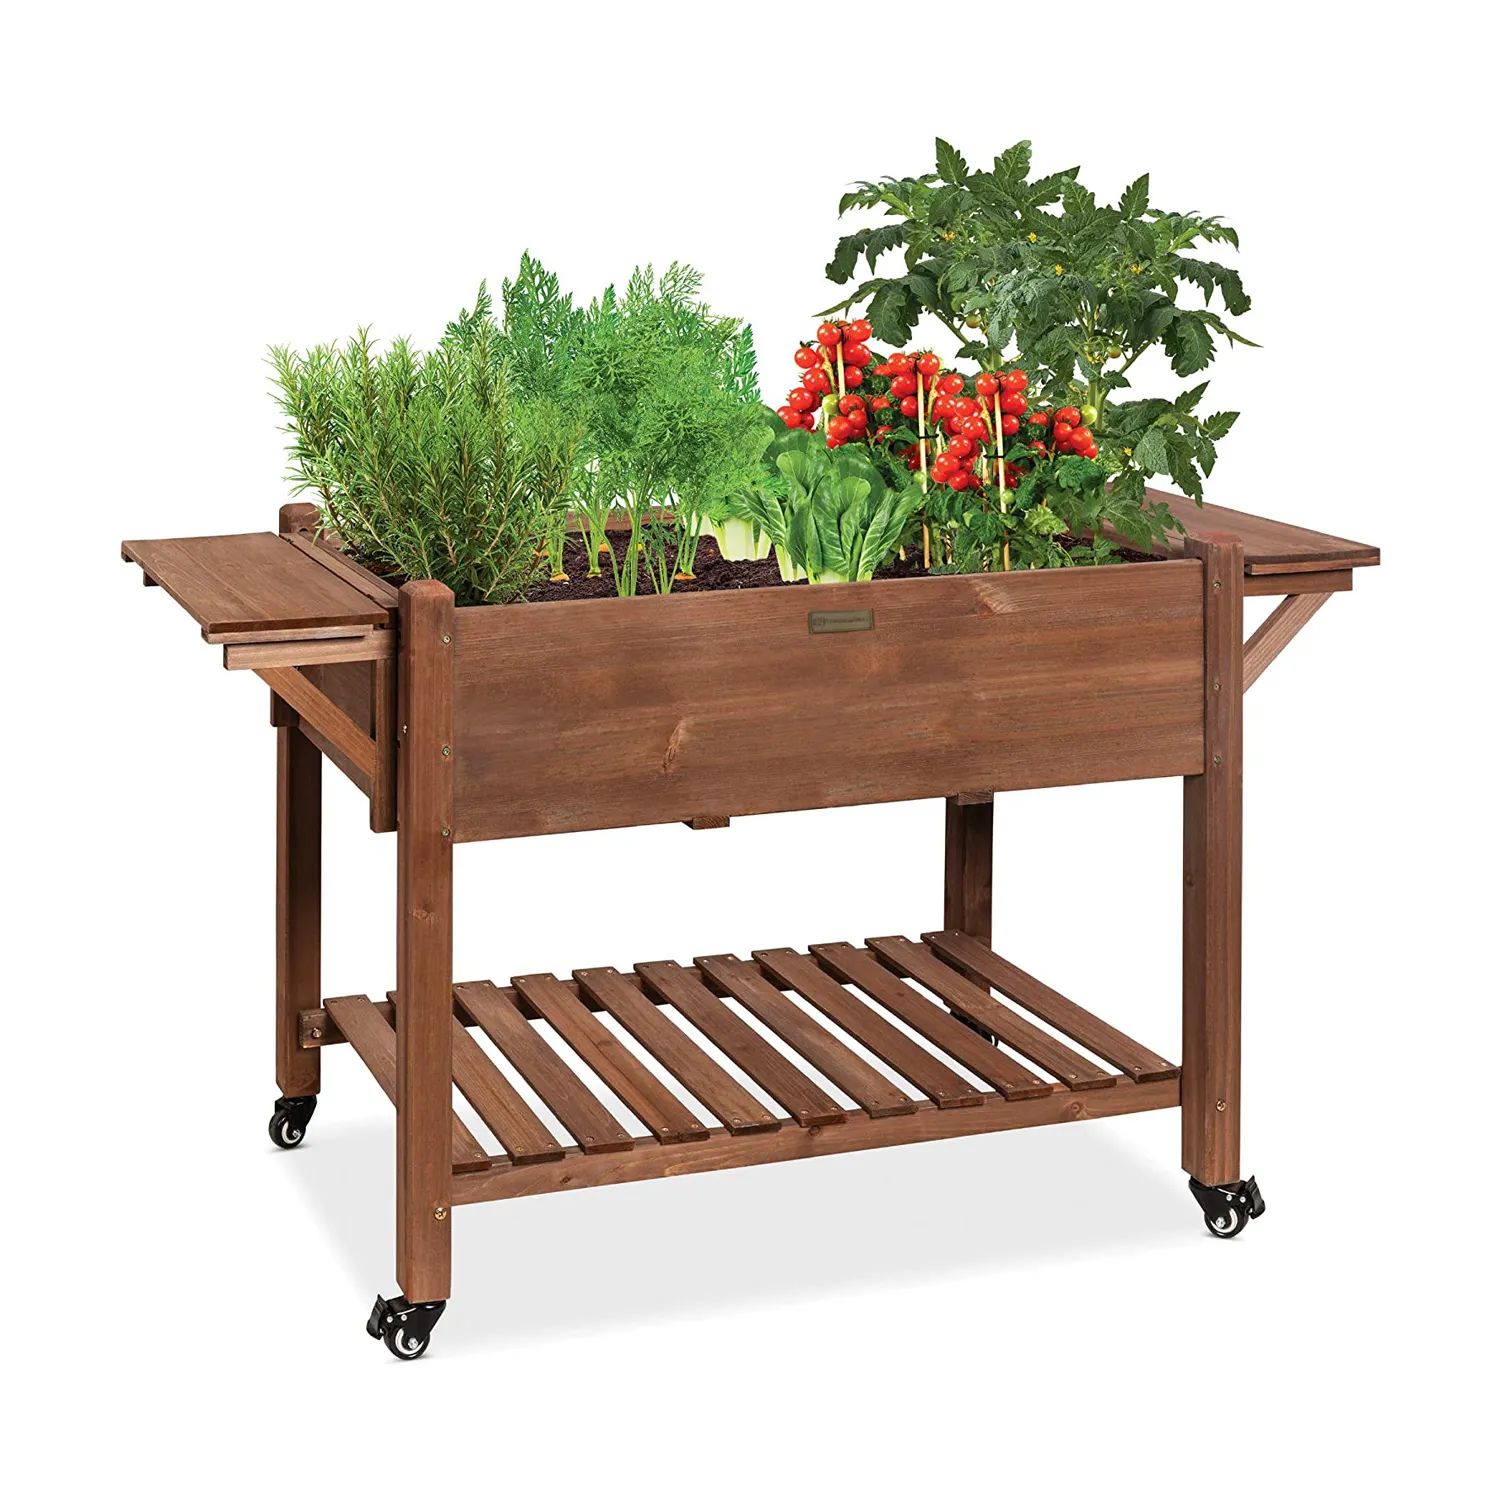 Table latérale pliante en bois, pour jardinage, fond de jardin, sexy, marron, support de planteur en bois surélevé, avec roues volantes